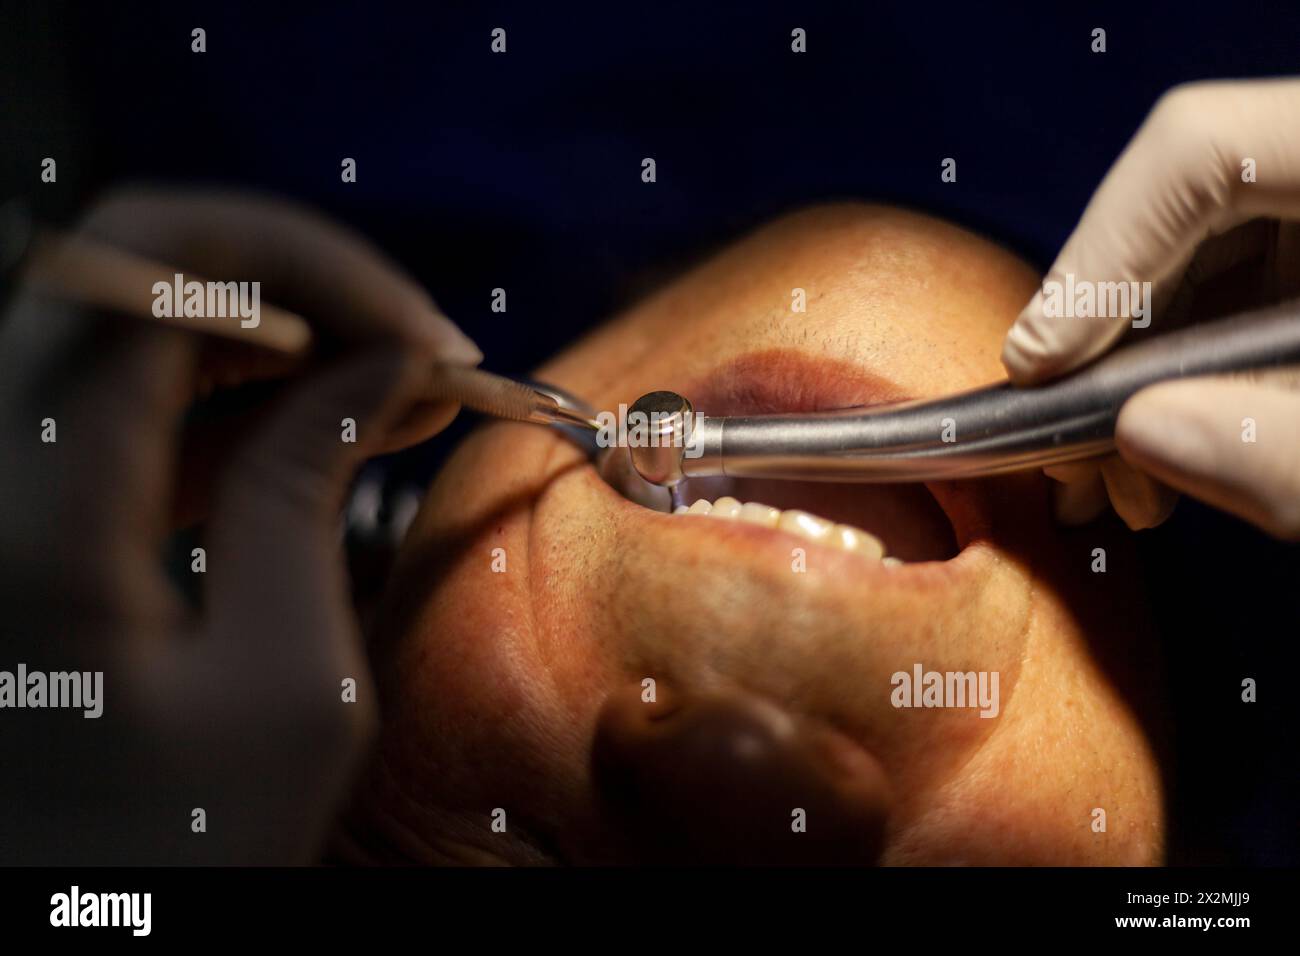 un homme adulte est vu par un dentiste, qui effectue une procédure avec une perceuse pour réparer une cavité dans une dent molaire. Banque D'Images